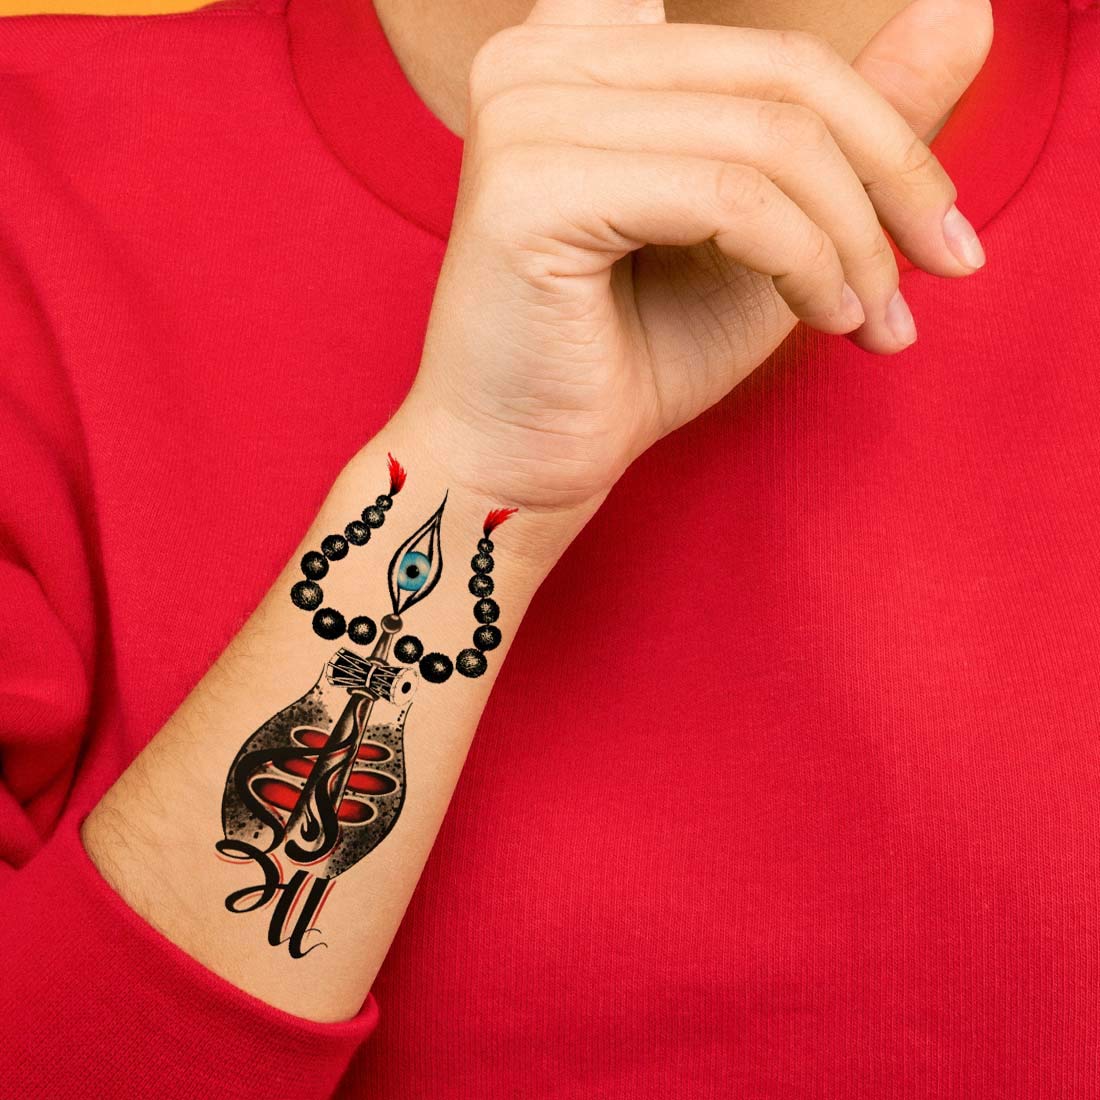 𝓵𝓾𝓬𝓴𝔂 𝓫𝓻𝓲𝓭𝓪𝓵 𝓶𝓮𝓱𝓪𝓷𝓭𝓲 and tattoo 𝓼𝓹𝓮𝓬𝓲𝓪𝓵𝓲𝓼𝓽  𝓪𝓻𝓽𝓲𝓼𝓽 on Instagram Trishul and maa tattoo design raj tattoo artist